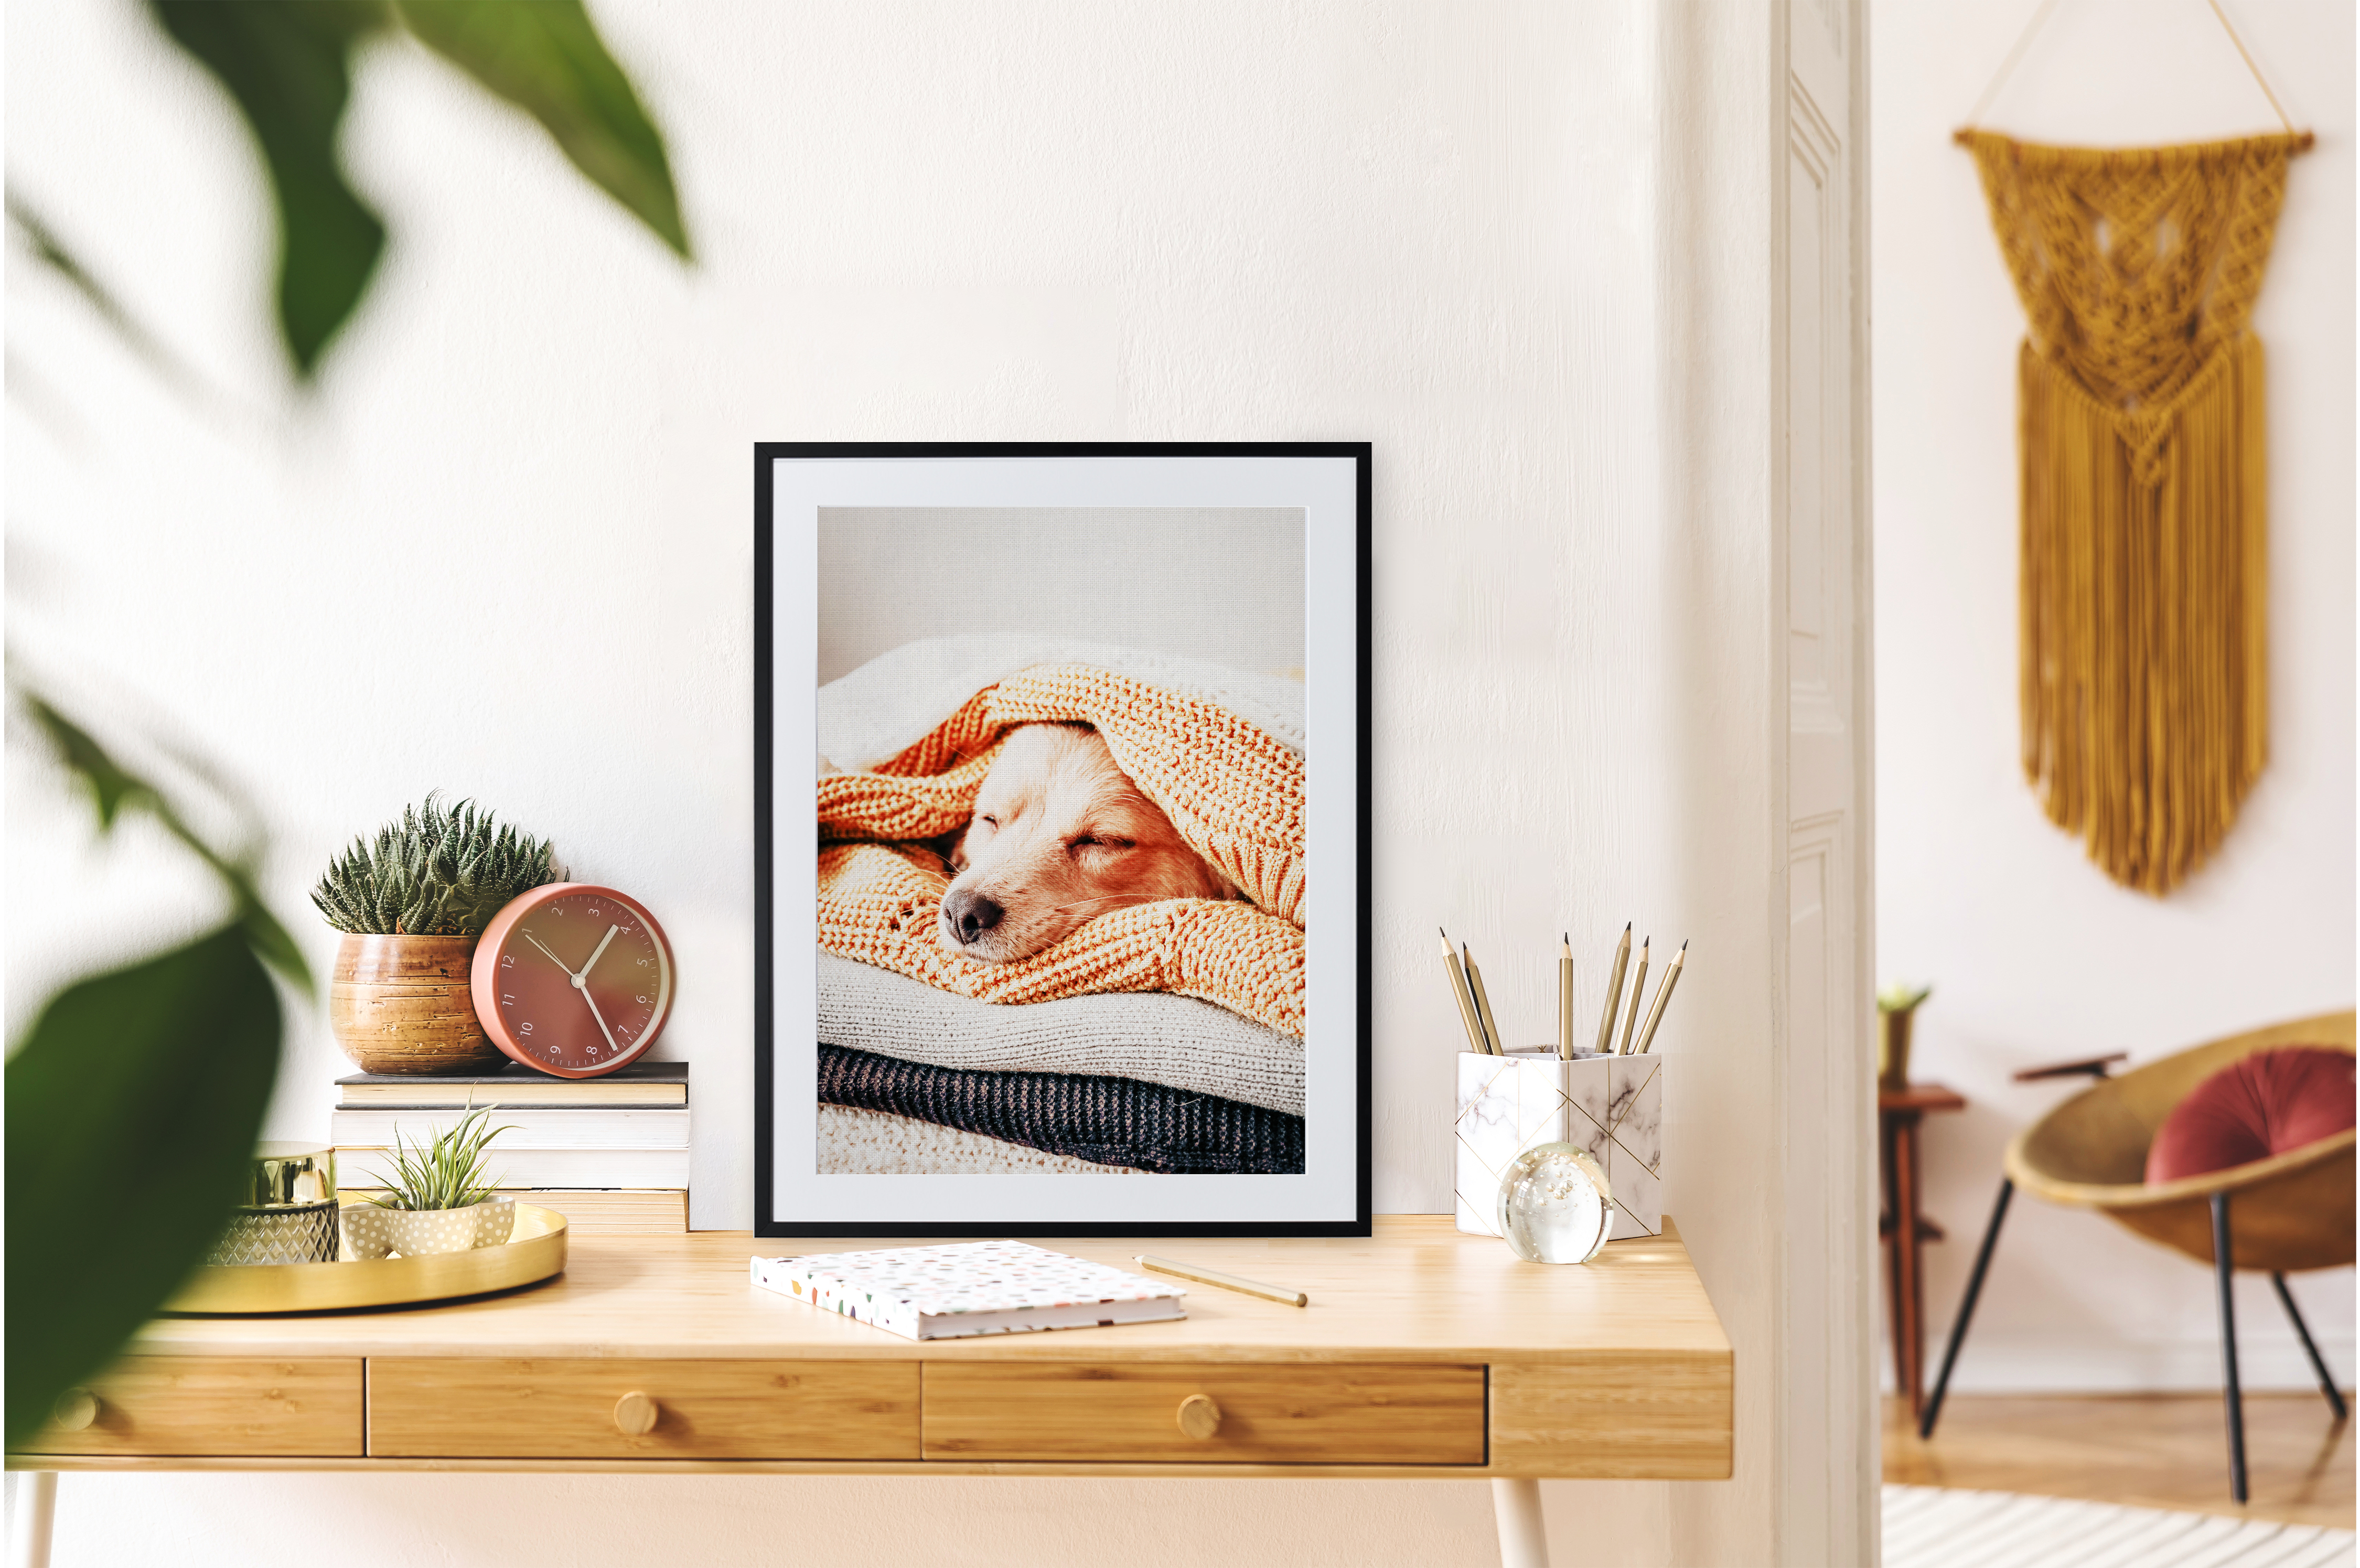 Framed print of dog under blankets